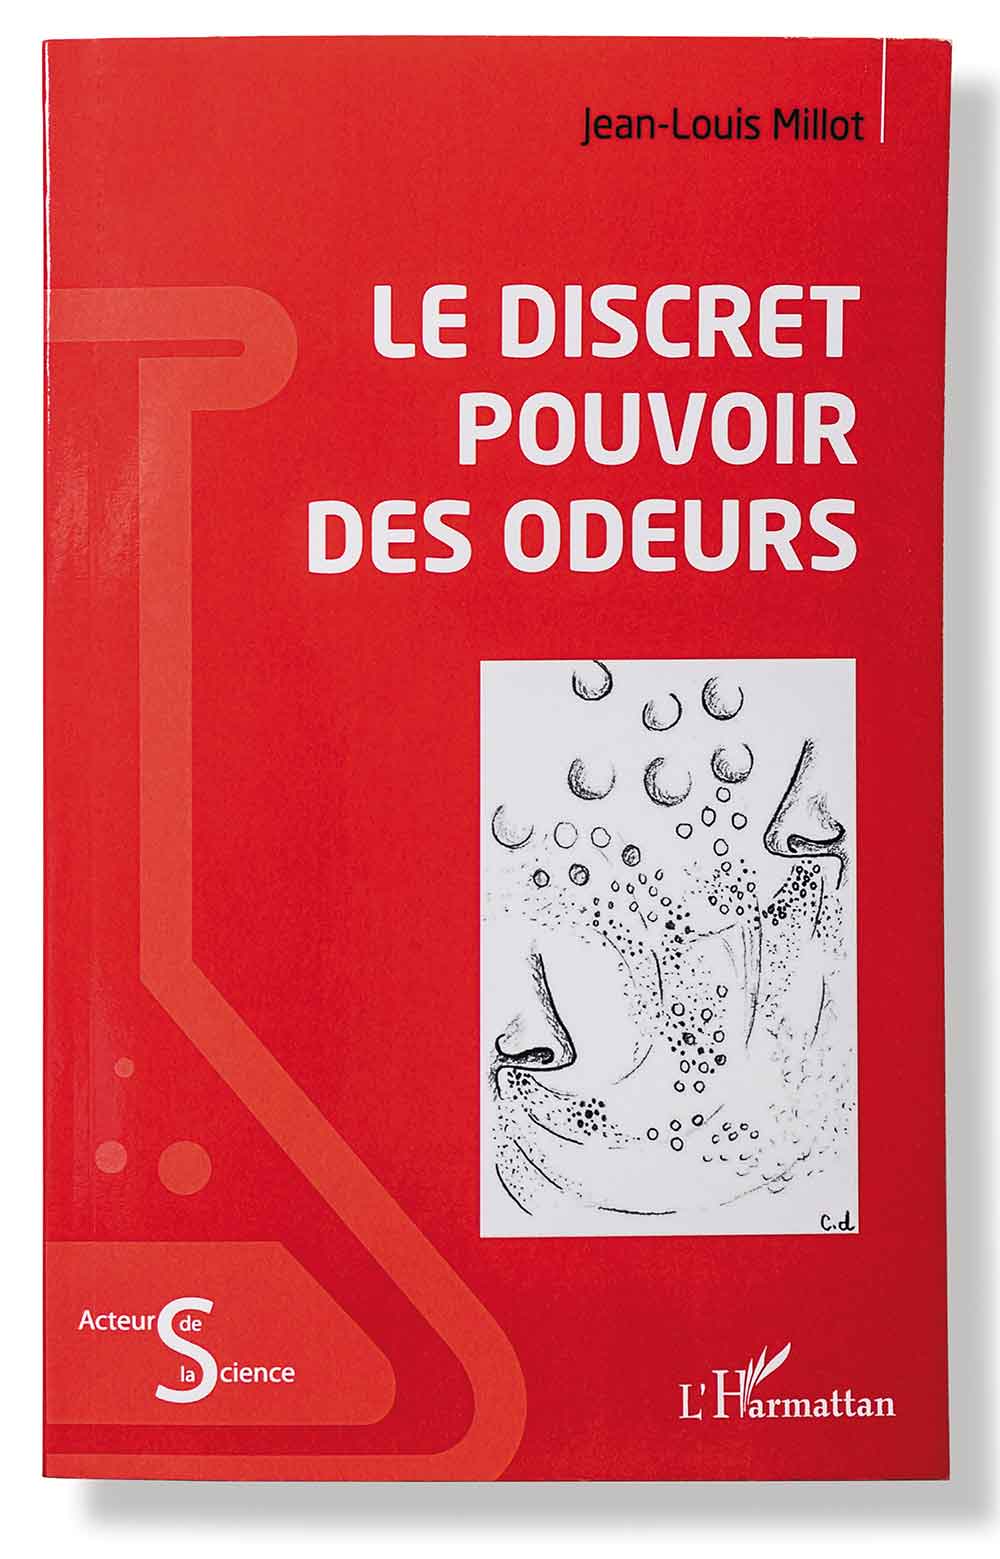 Le Discret Pouvoir des odeurs – Jean-Louis Millot